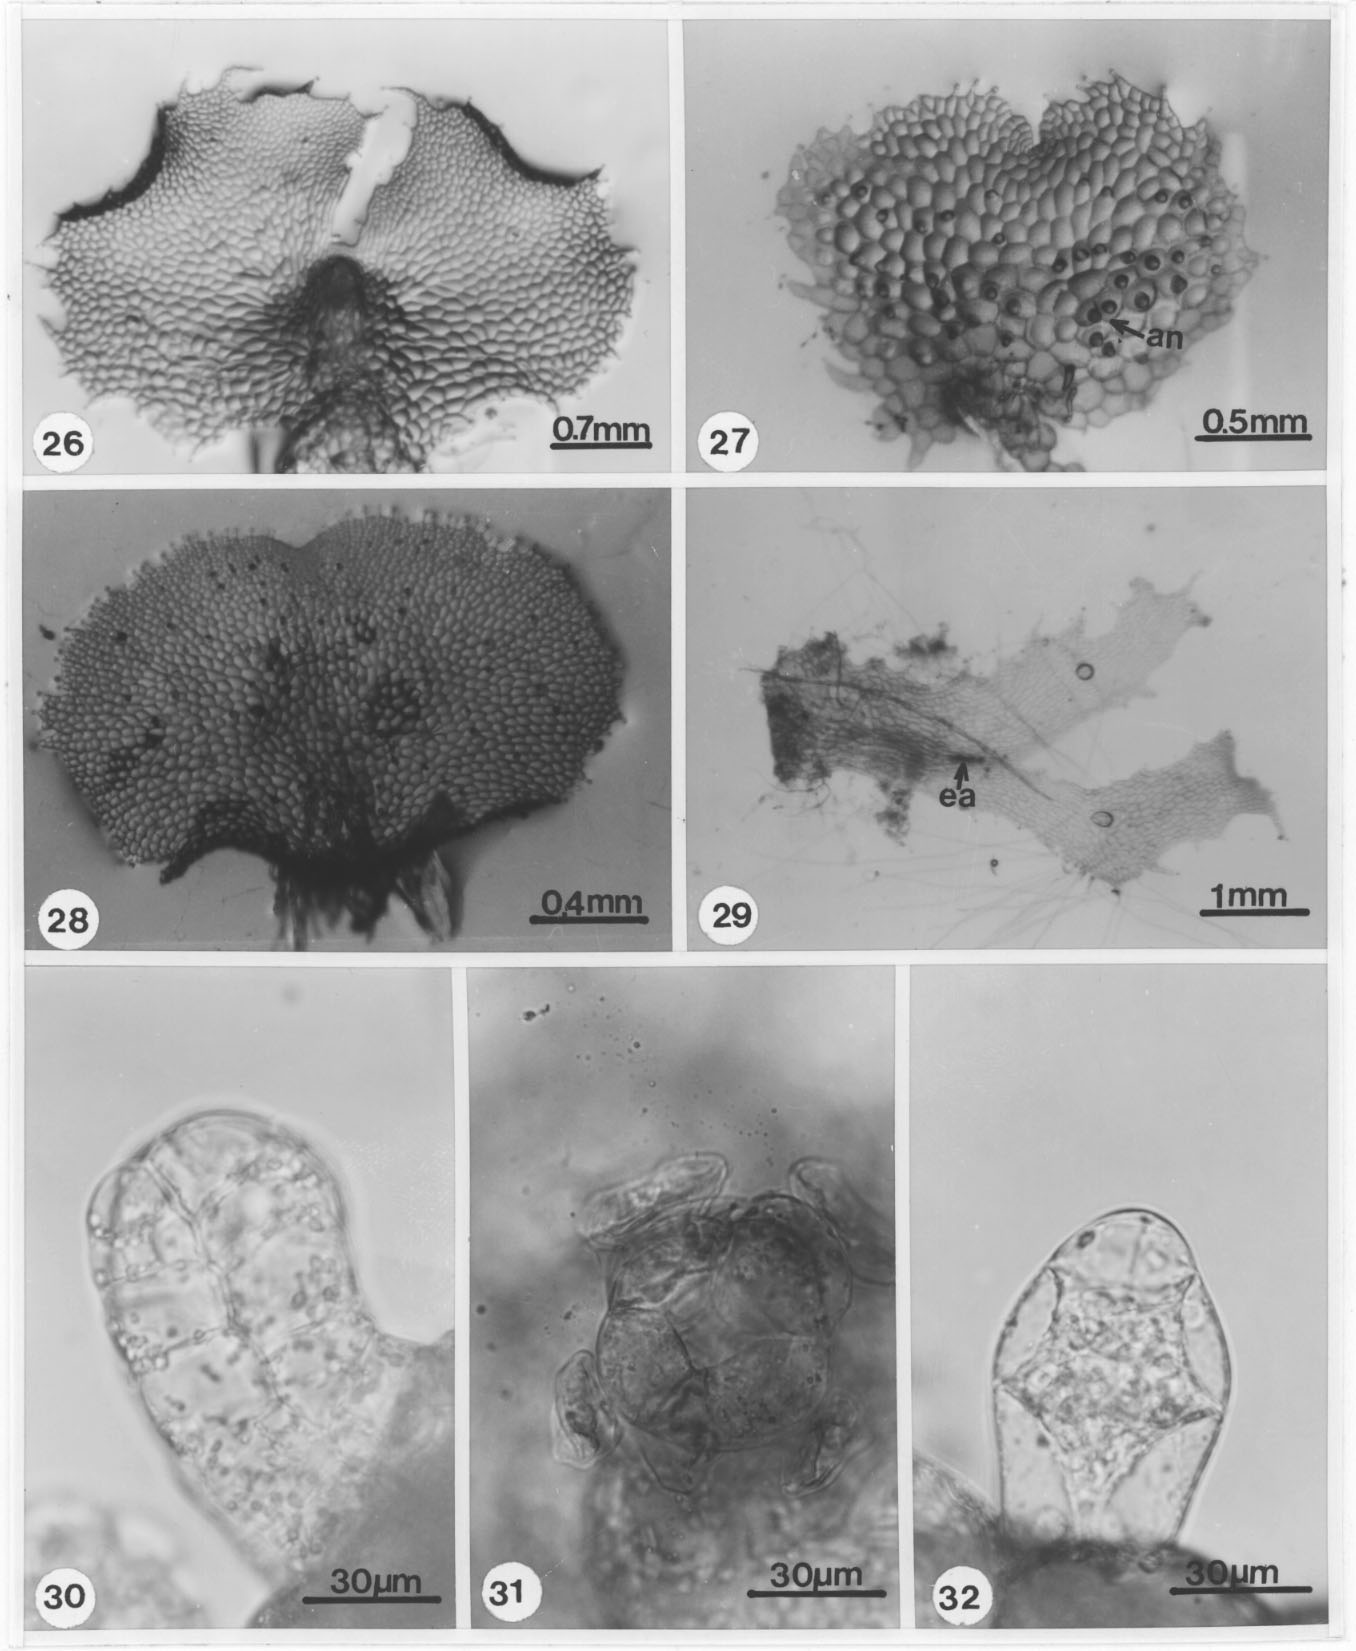 76 REVISTA DE BIOLOGÍA TROPICAL Figs. 26-32. Fase adulta y gametangios de Dryopteris spp. 26. Protalo, D. munchii (61 días). 27. Protalo masculino, D. munchii (61 días). 28. Protalo cordiforme, D.